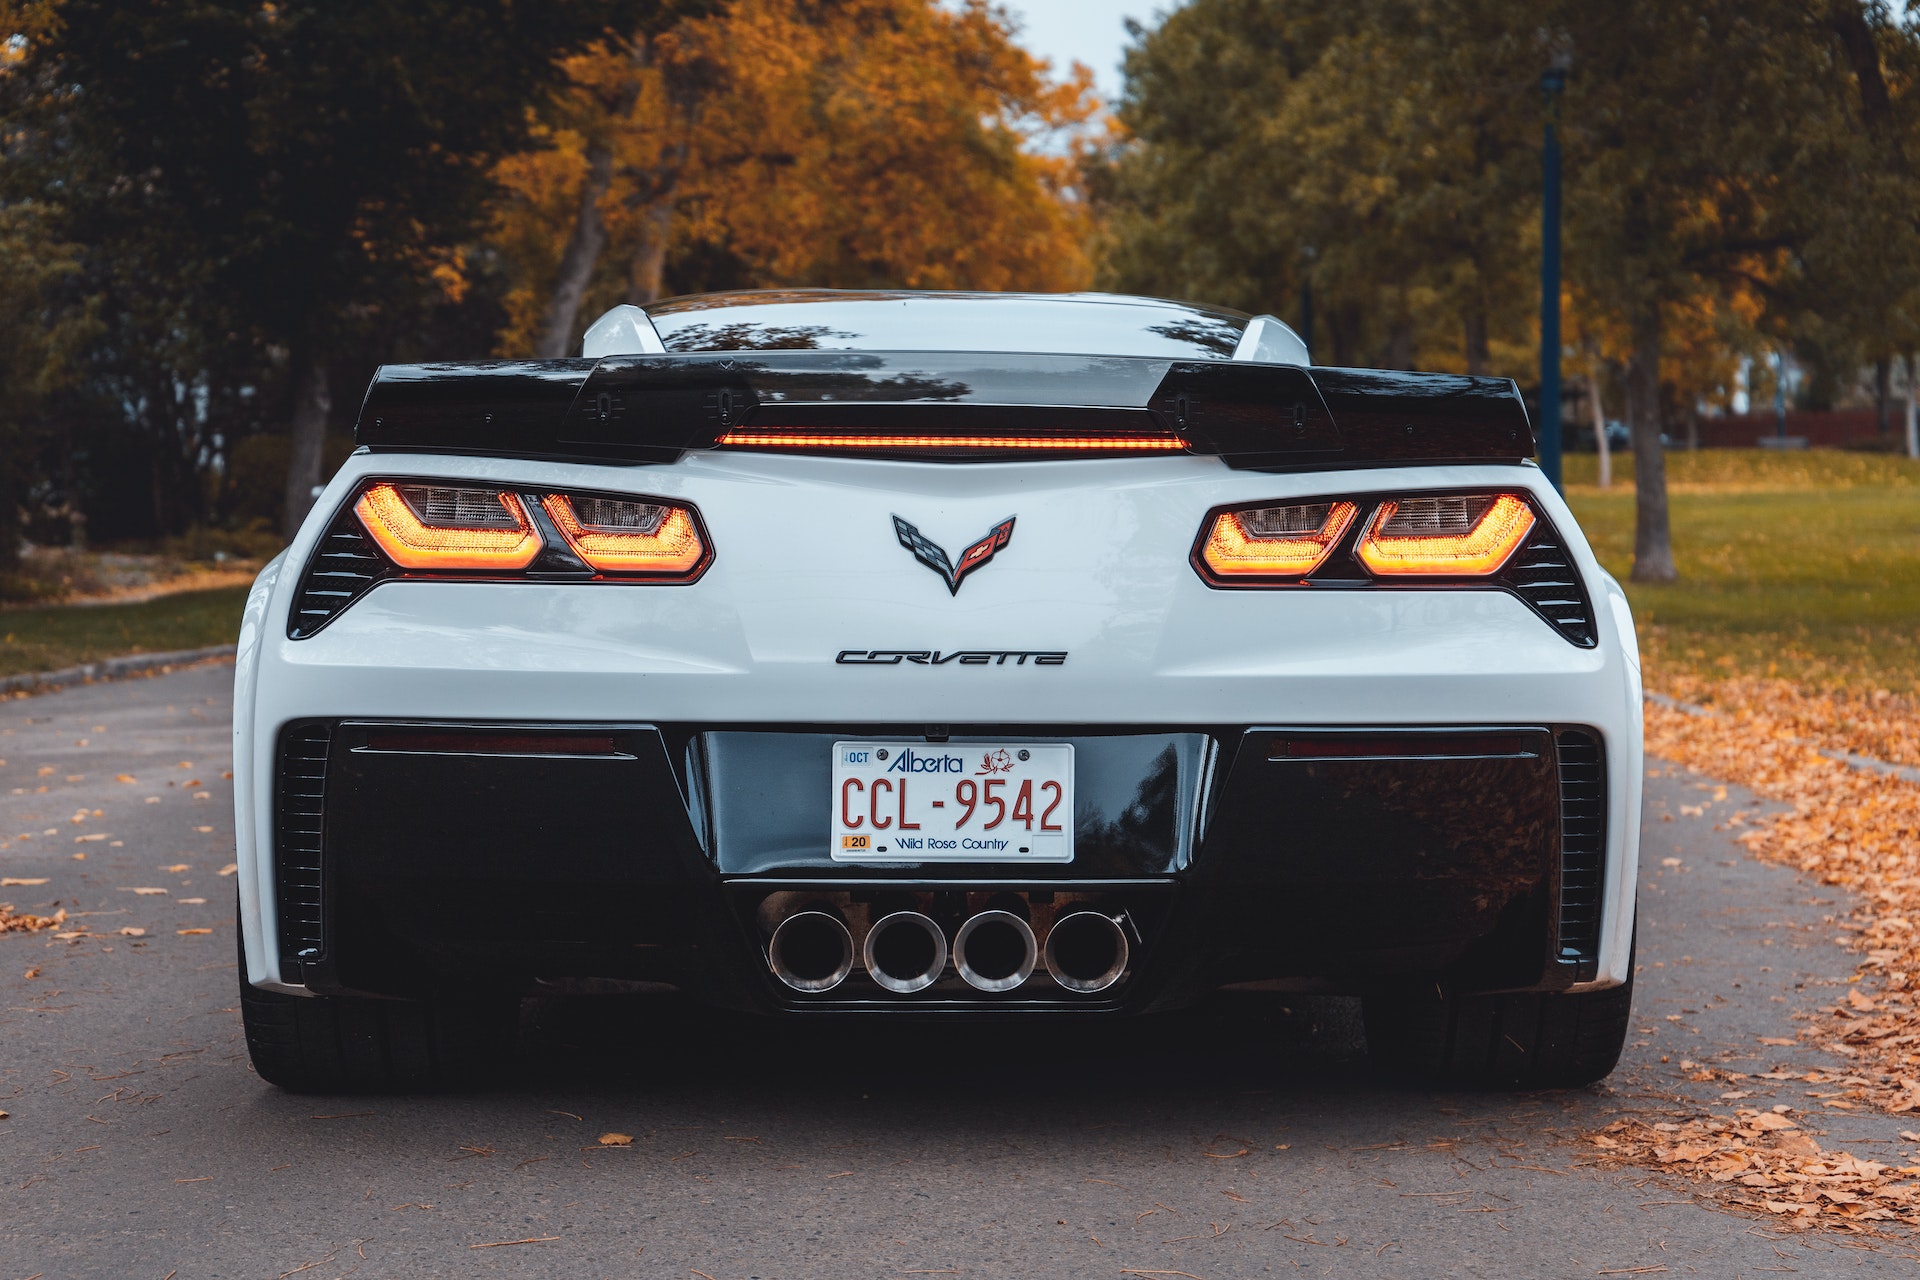 A Corvette | Source: Pexels